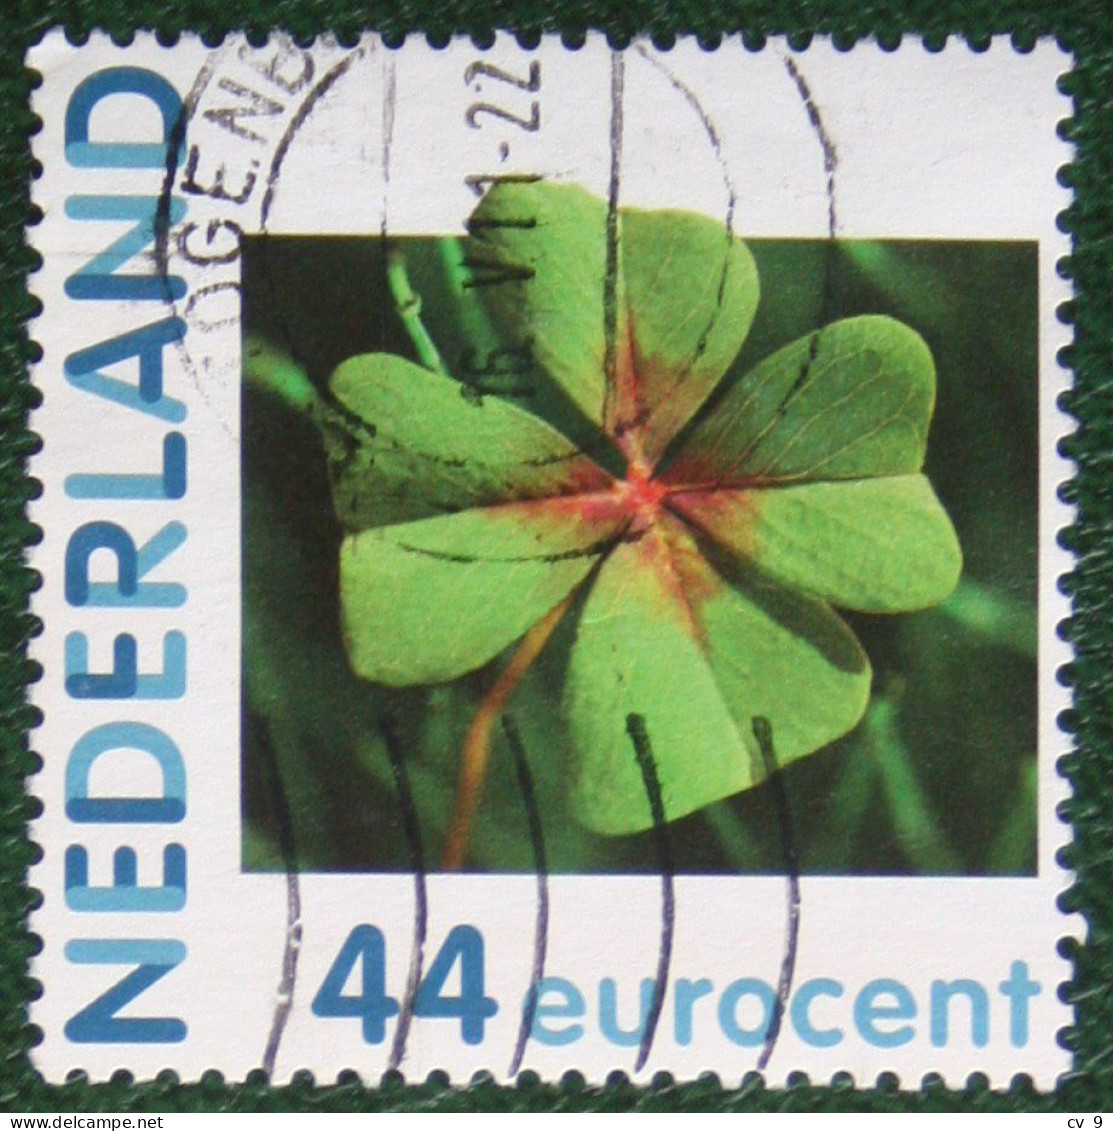 HALLMARK Plant Klaver Vier Persoonlijke Zegel NVPH 2682 Gestempeld / USED / Oblitere NEDERLAND / NIEDERLANDE - Persoonlijke Postzegels